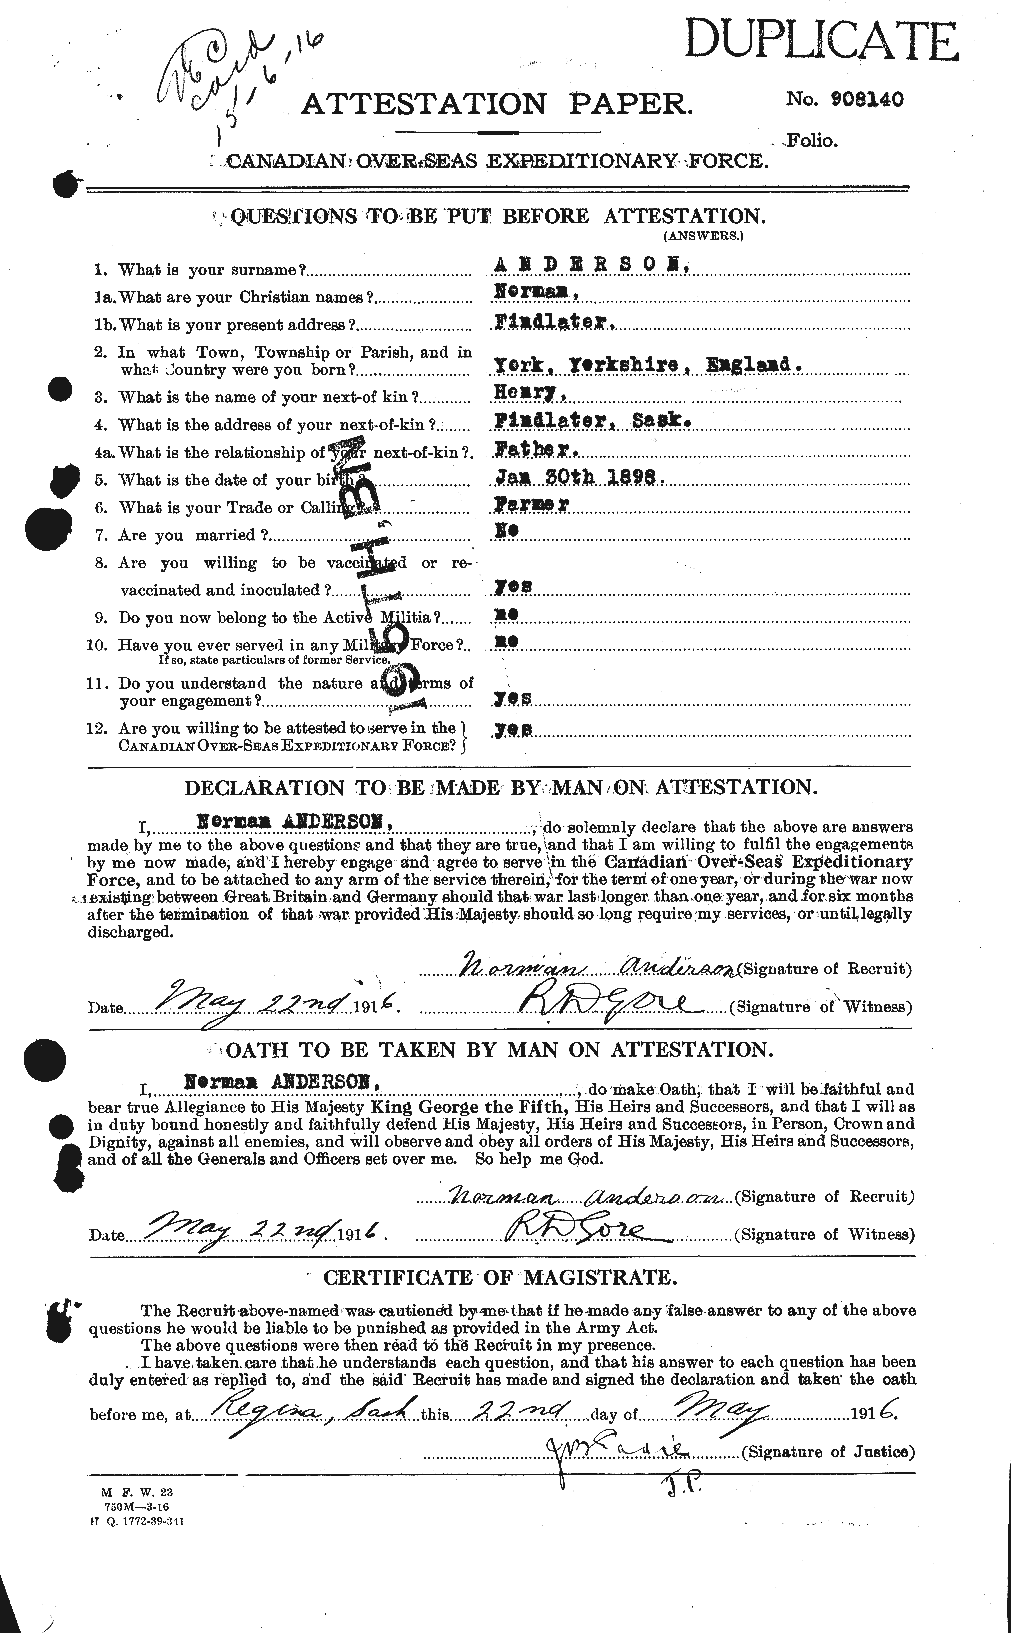 Dossiers du Personnel de la Première Guerre mondiale - CEC 207419a